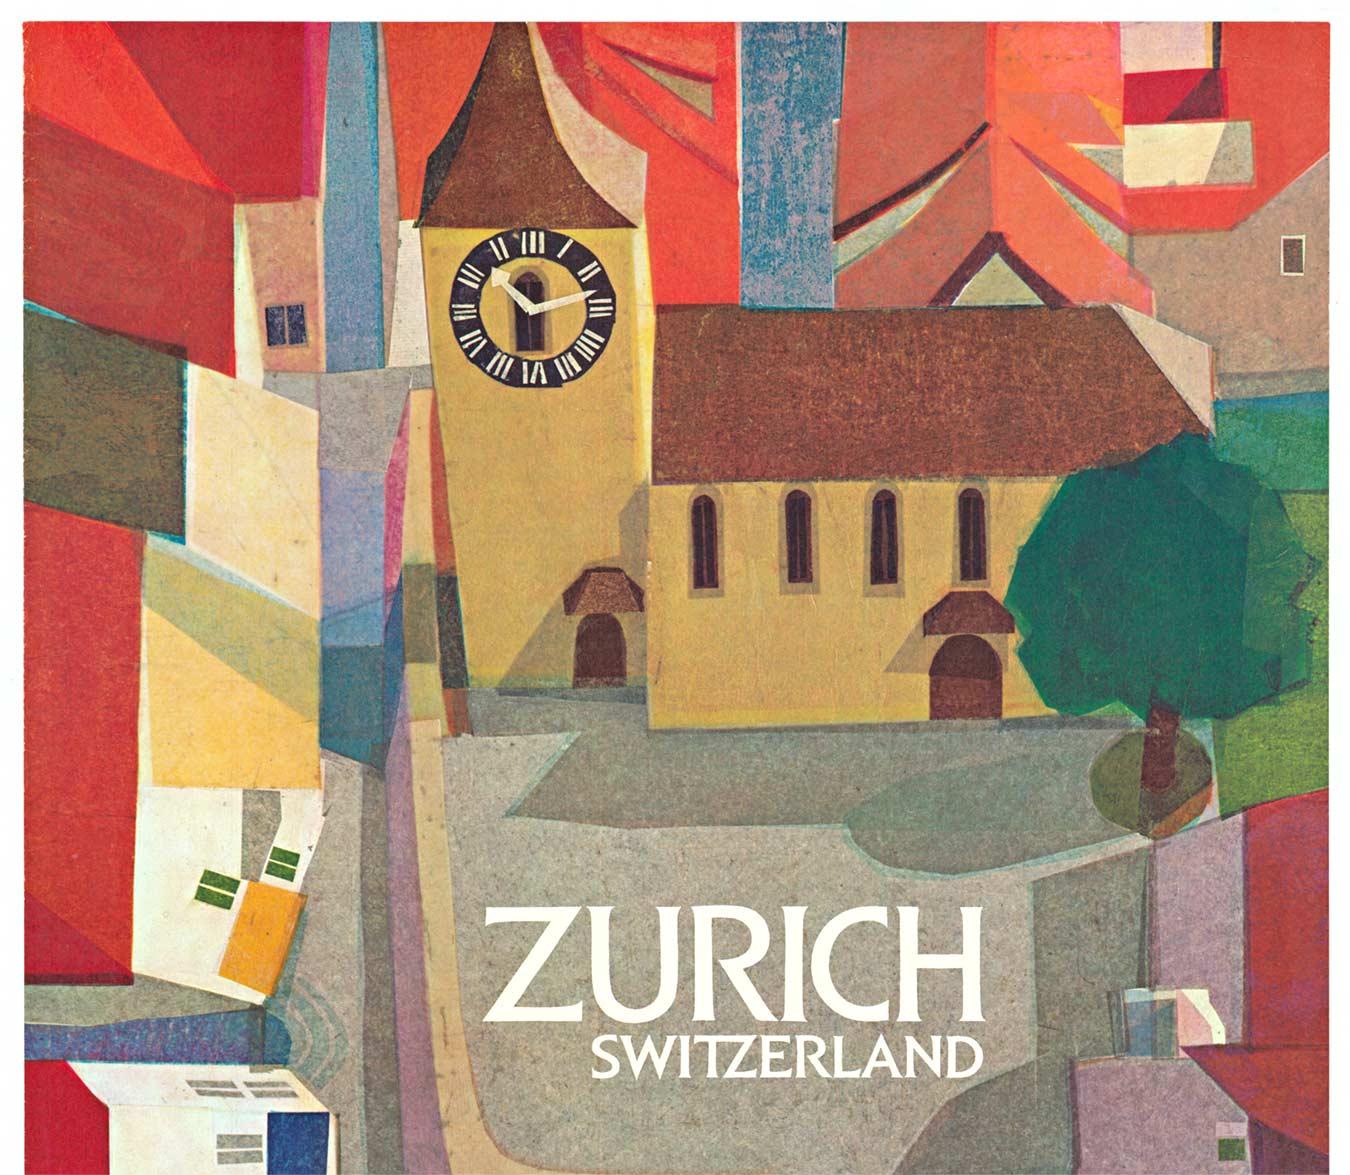 Original Zurich, Switzerland vintage travel poster - Print by Steffen Wolff